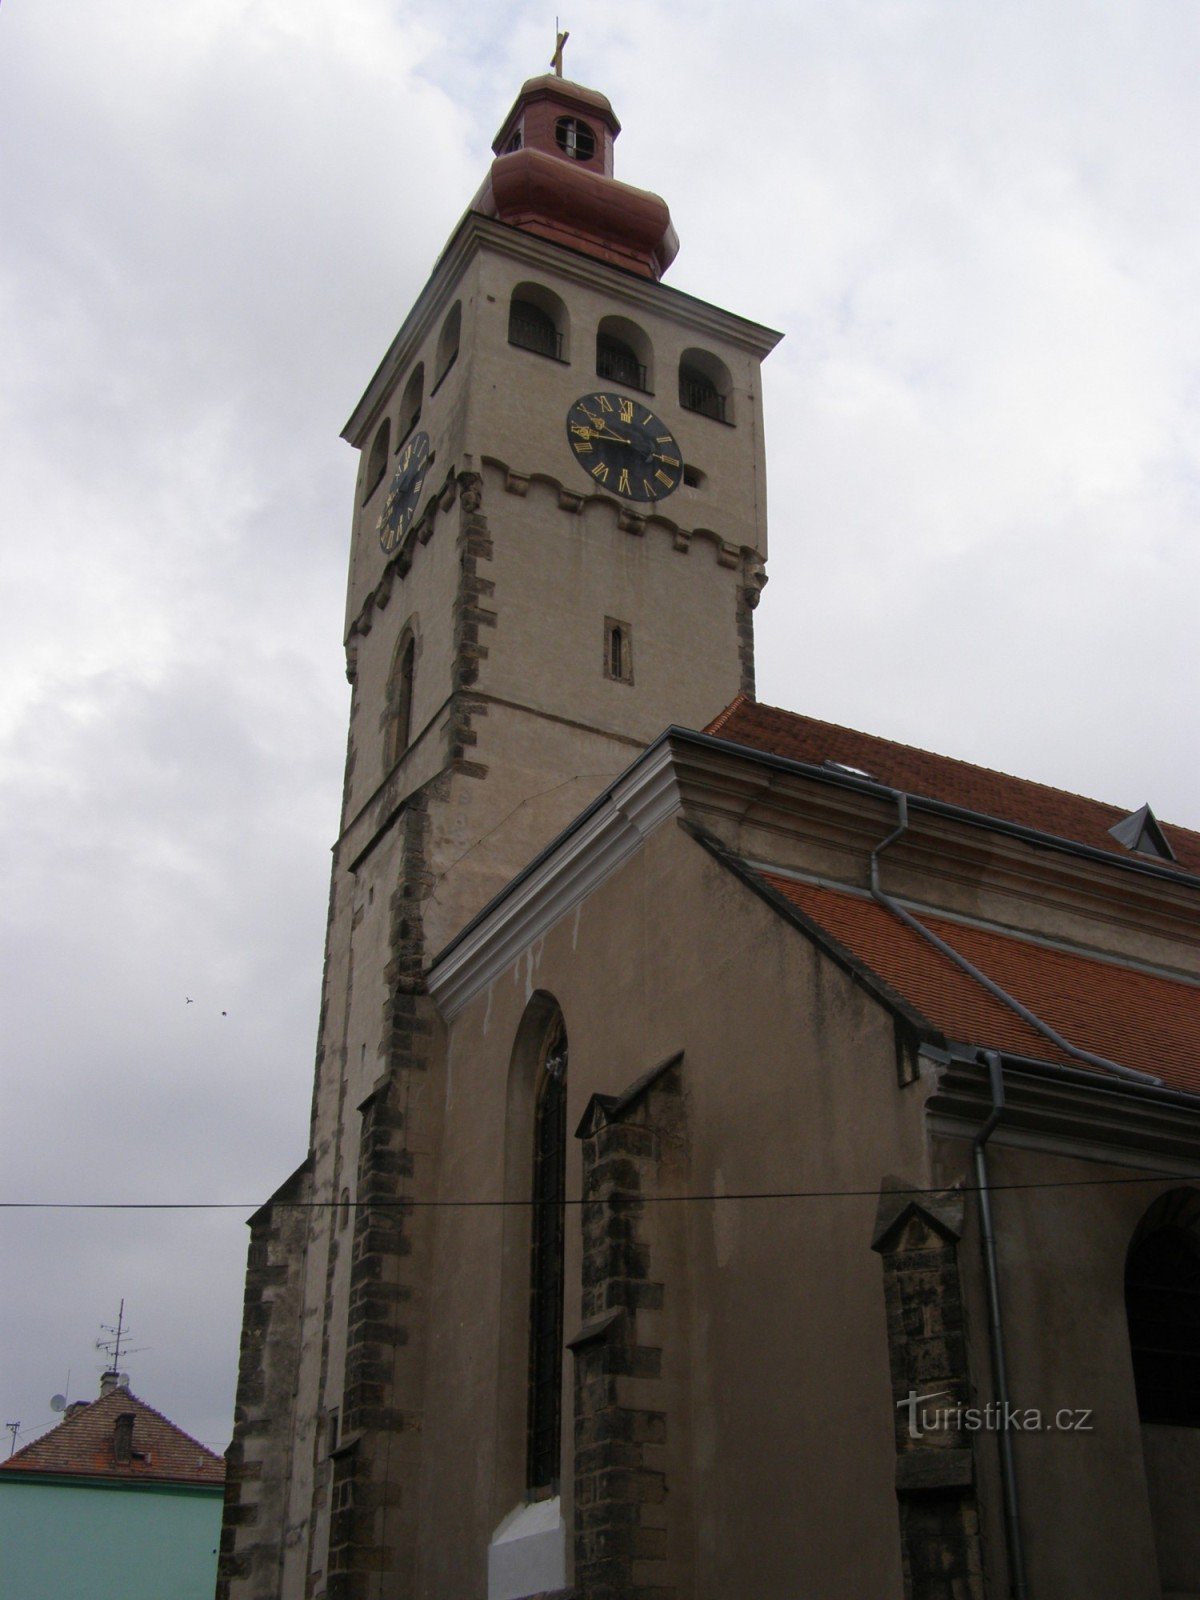 Nový Bydžov - Szent István-templom. Lawrence